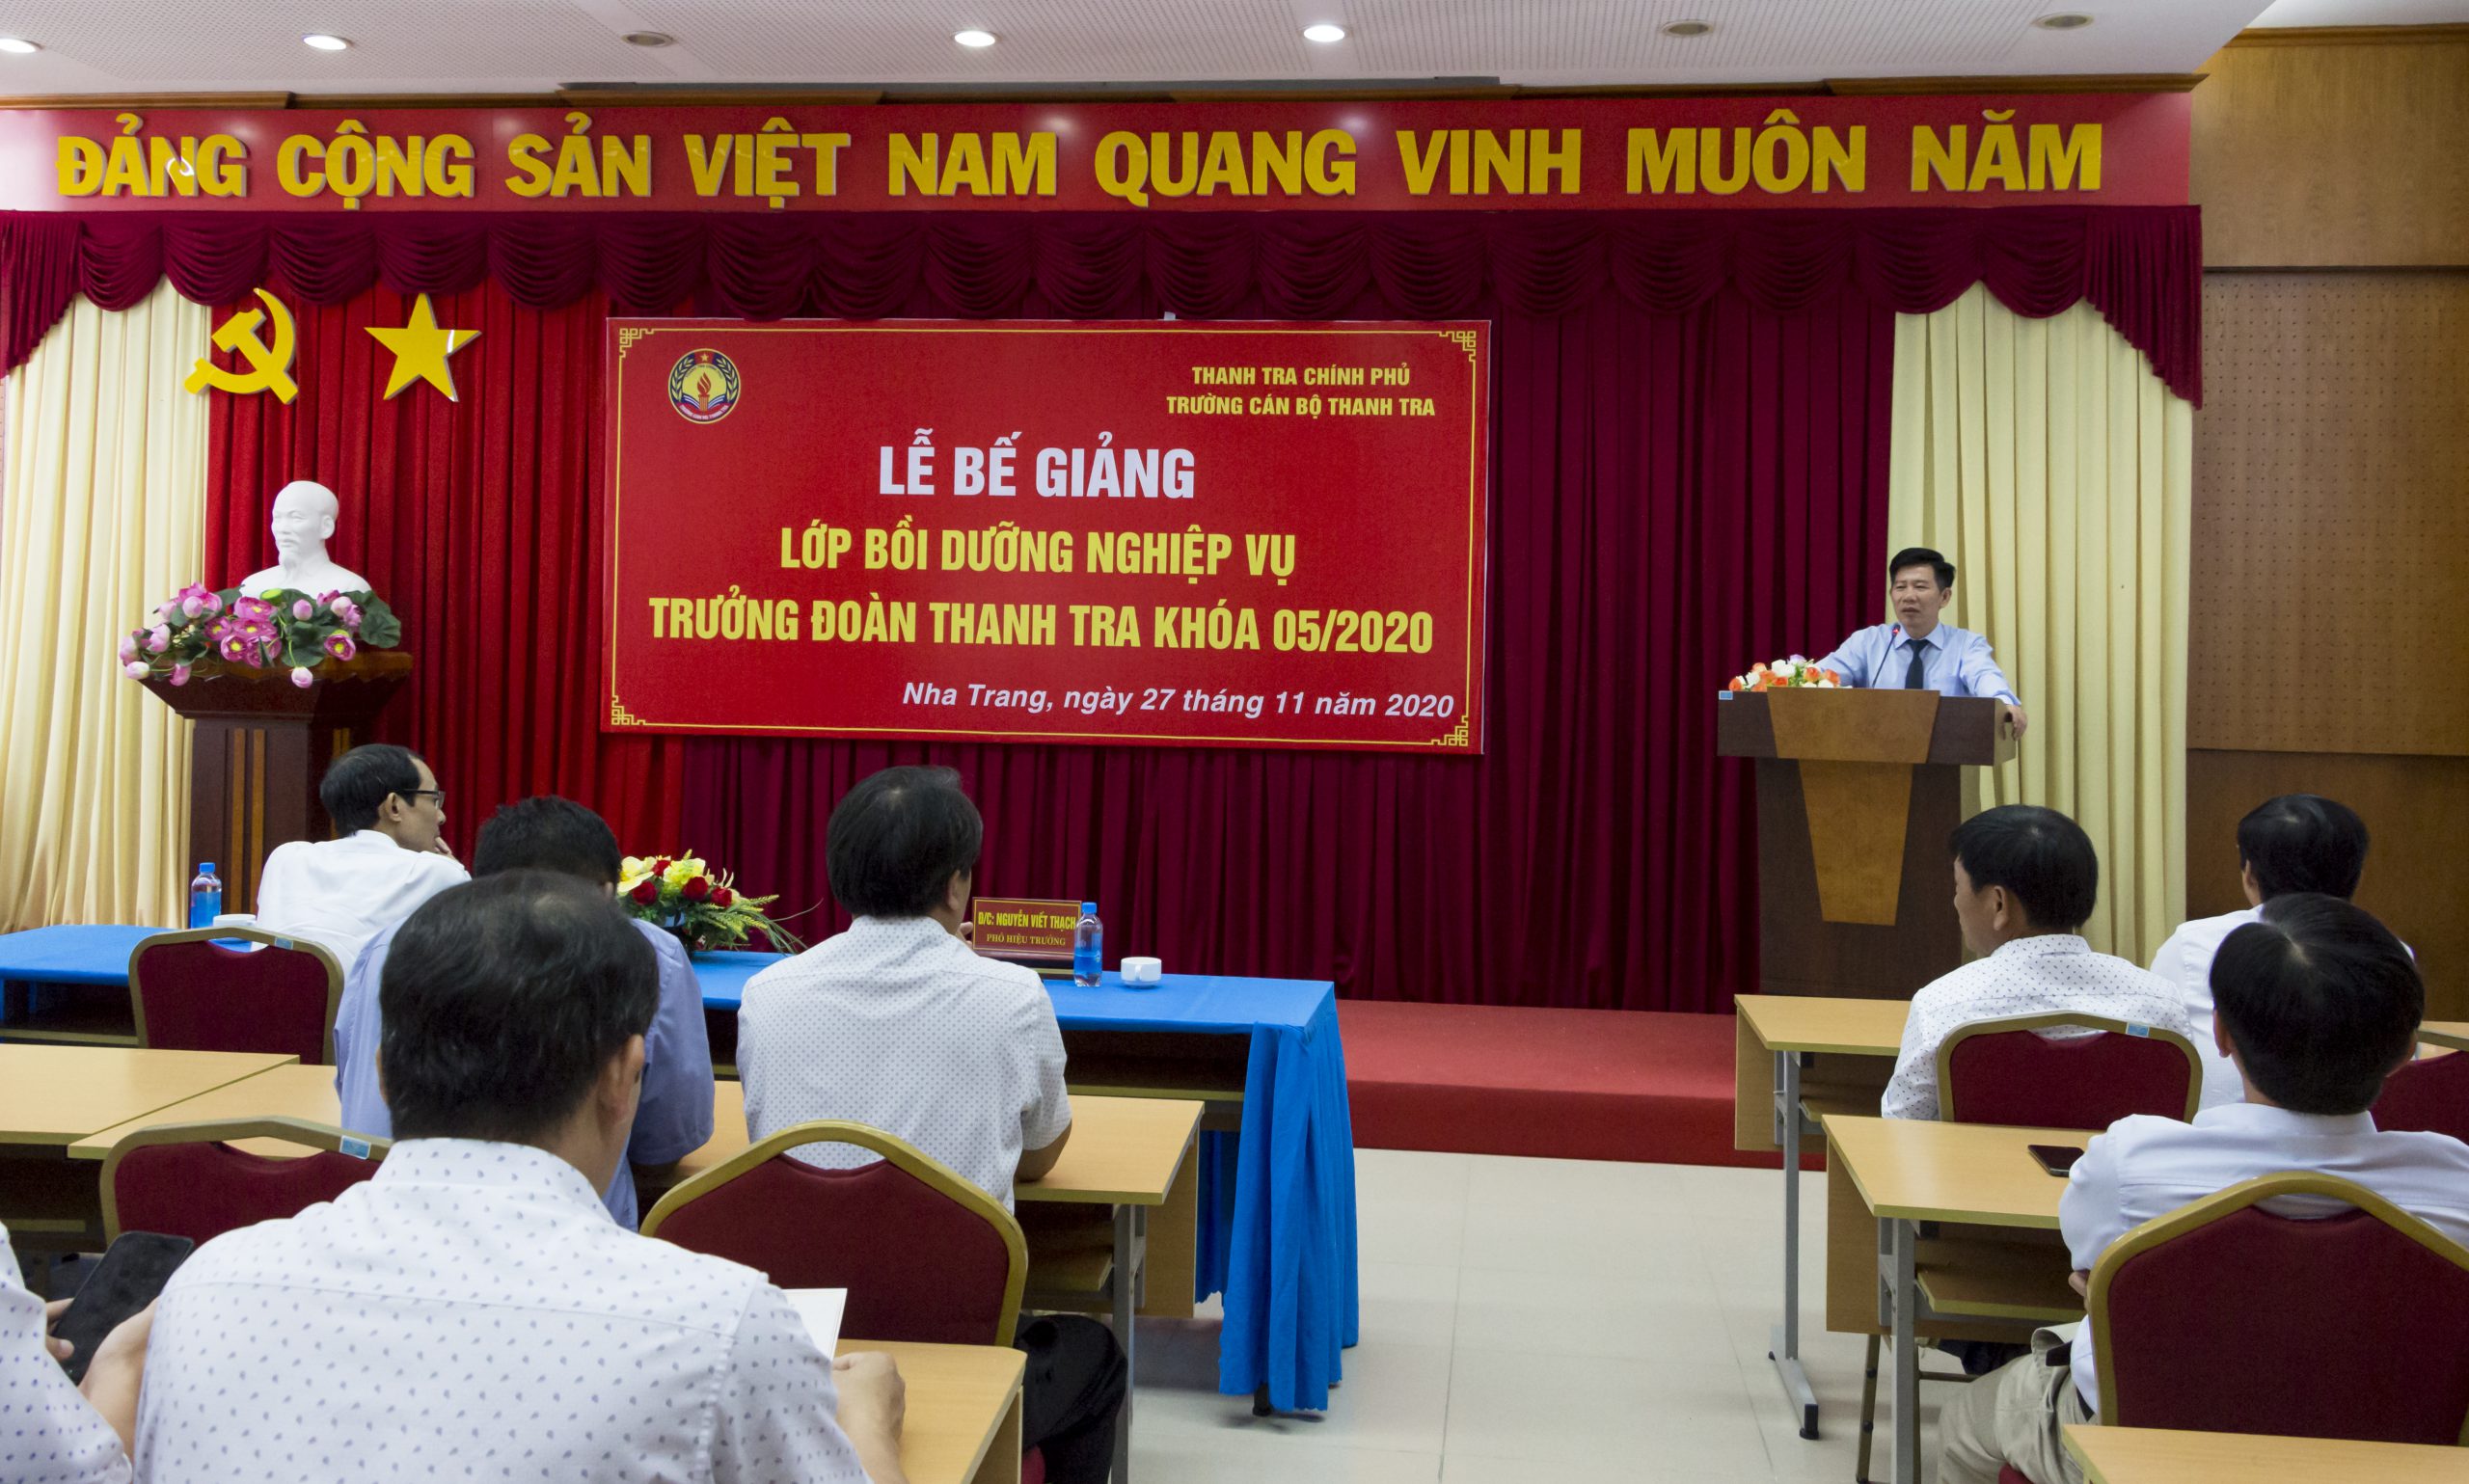 Ông Nguyễn Viết Thạch TTVCC Phó Hiệu trưởng Trg CBTT phát biểu bế giảng khóa học